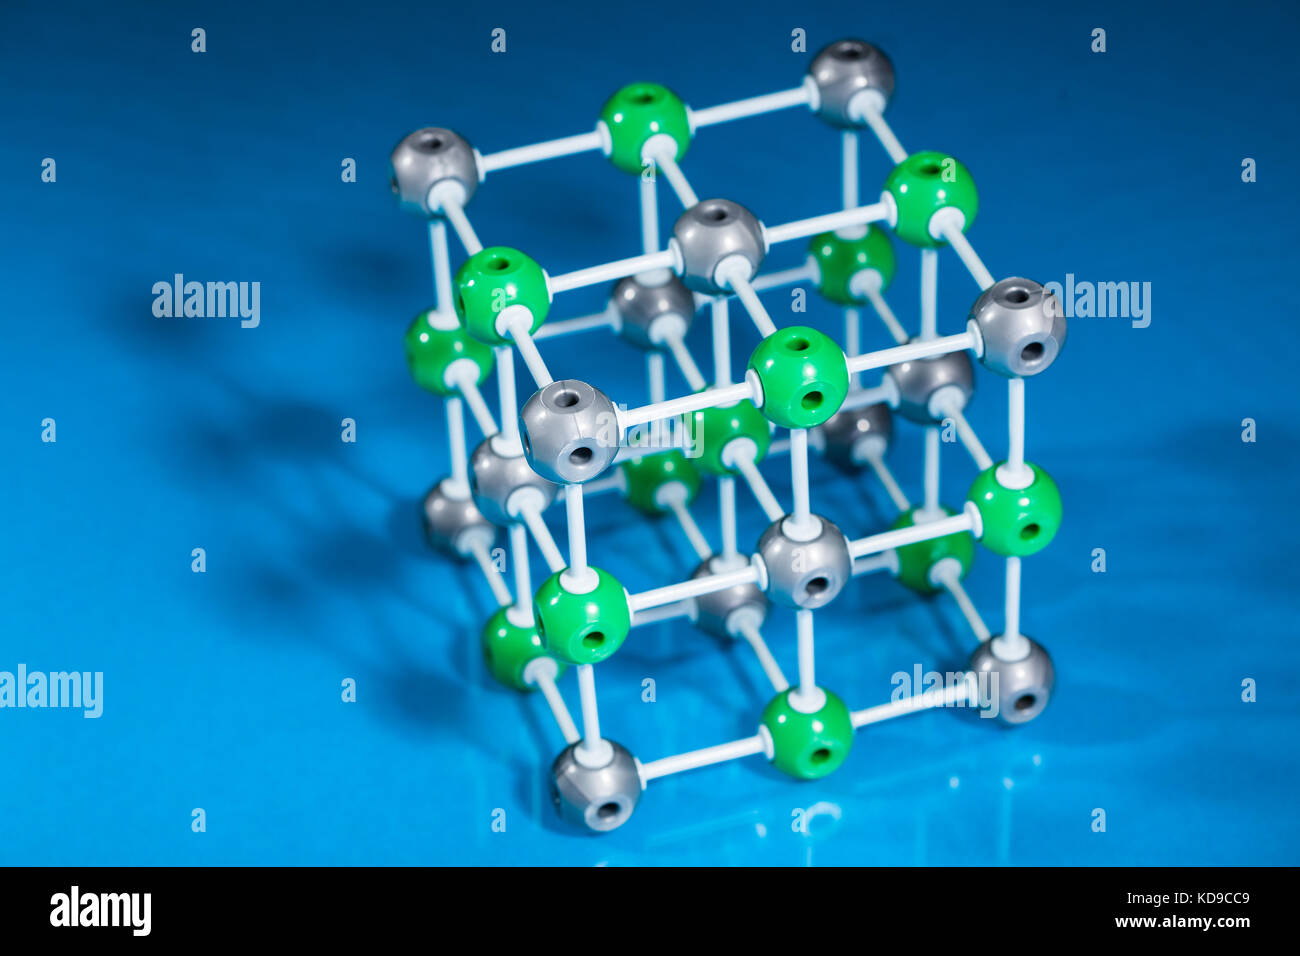 Modell der molekularen Struktur auf Blau reflektierenden Hintergrund Stockfoto